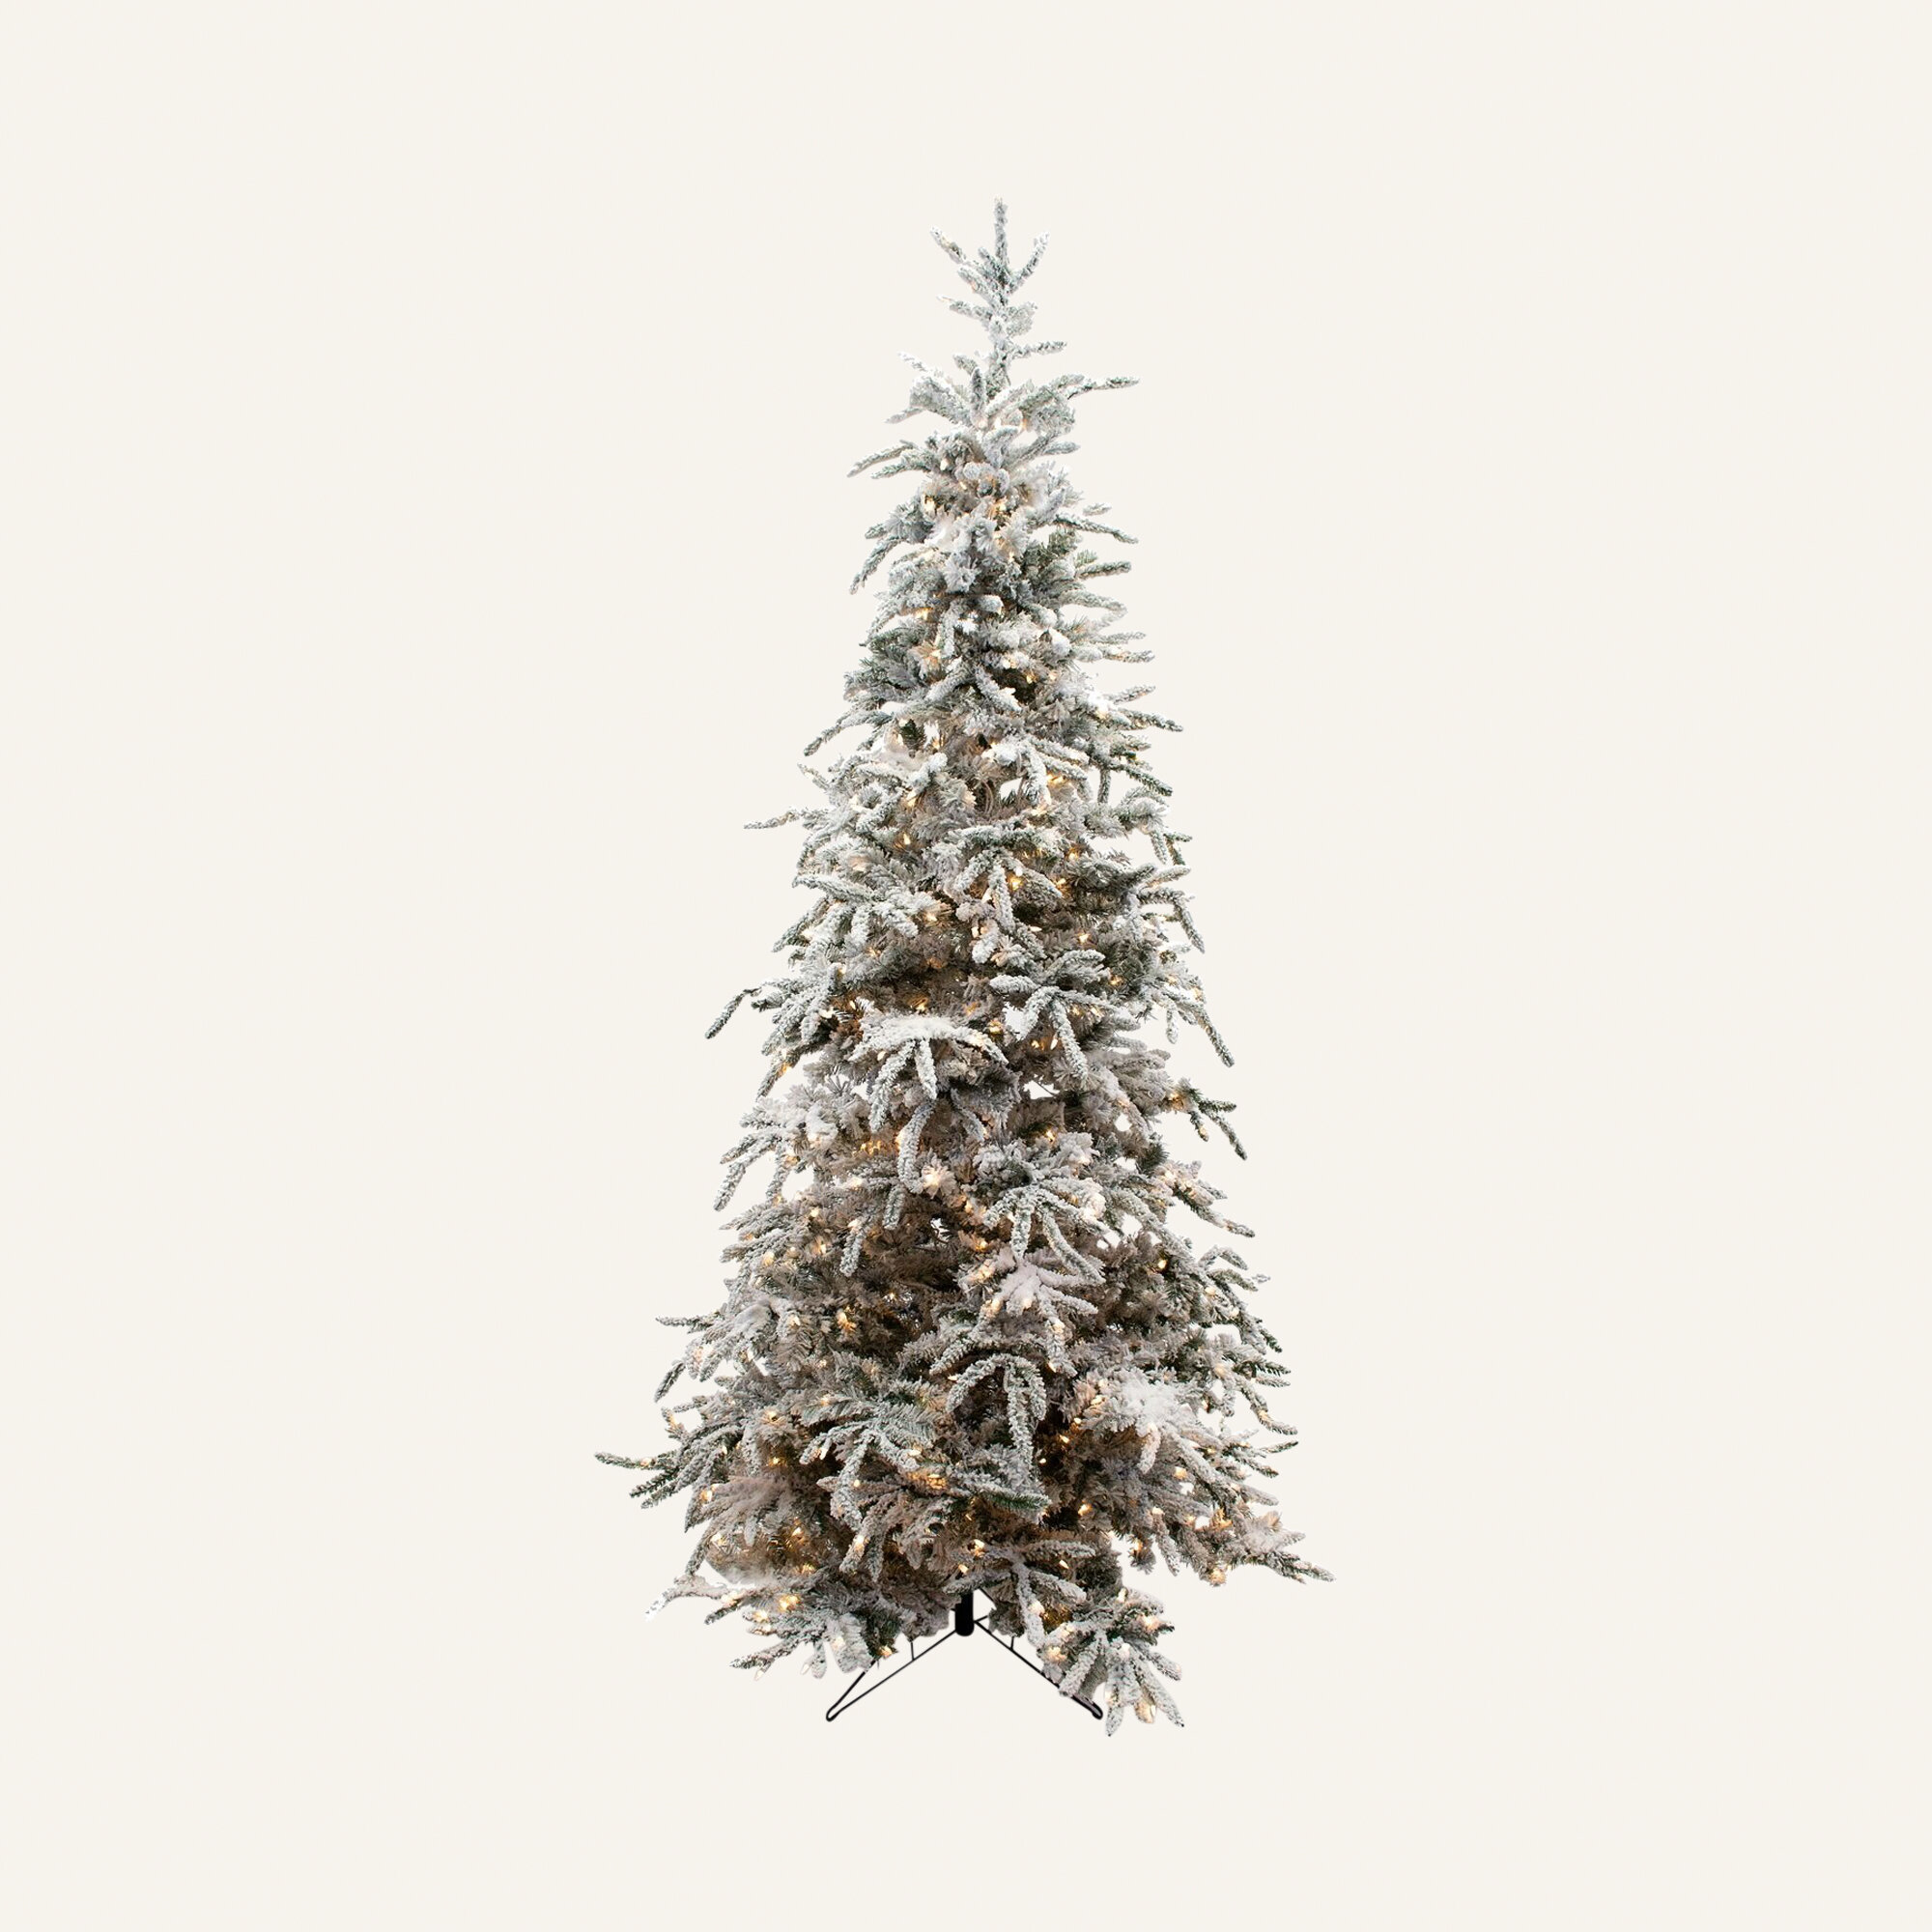 https://assets.wfcdn.com/im/61042428/compr-r85/1266/126673966/lighted-artificial-balsam-fir-christmas-tree.jpg